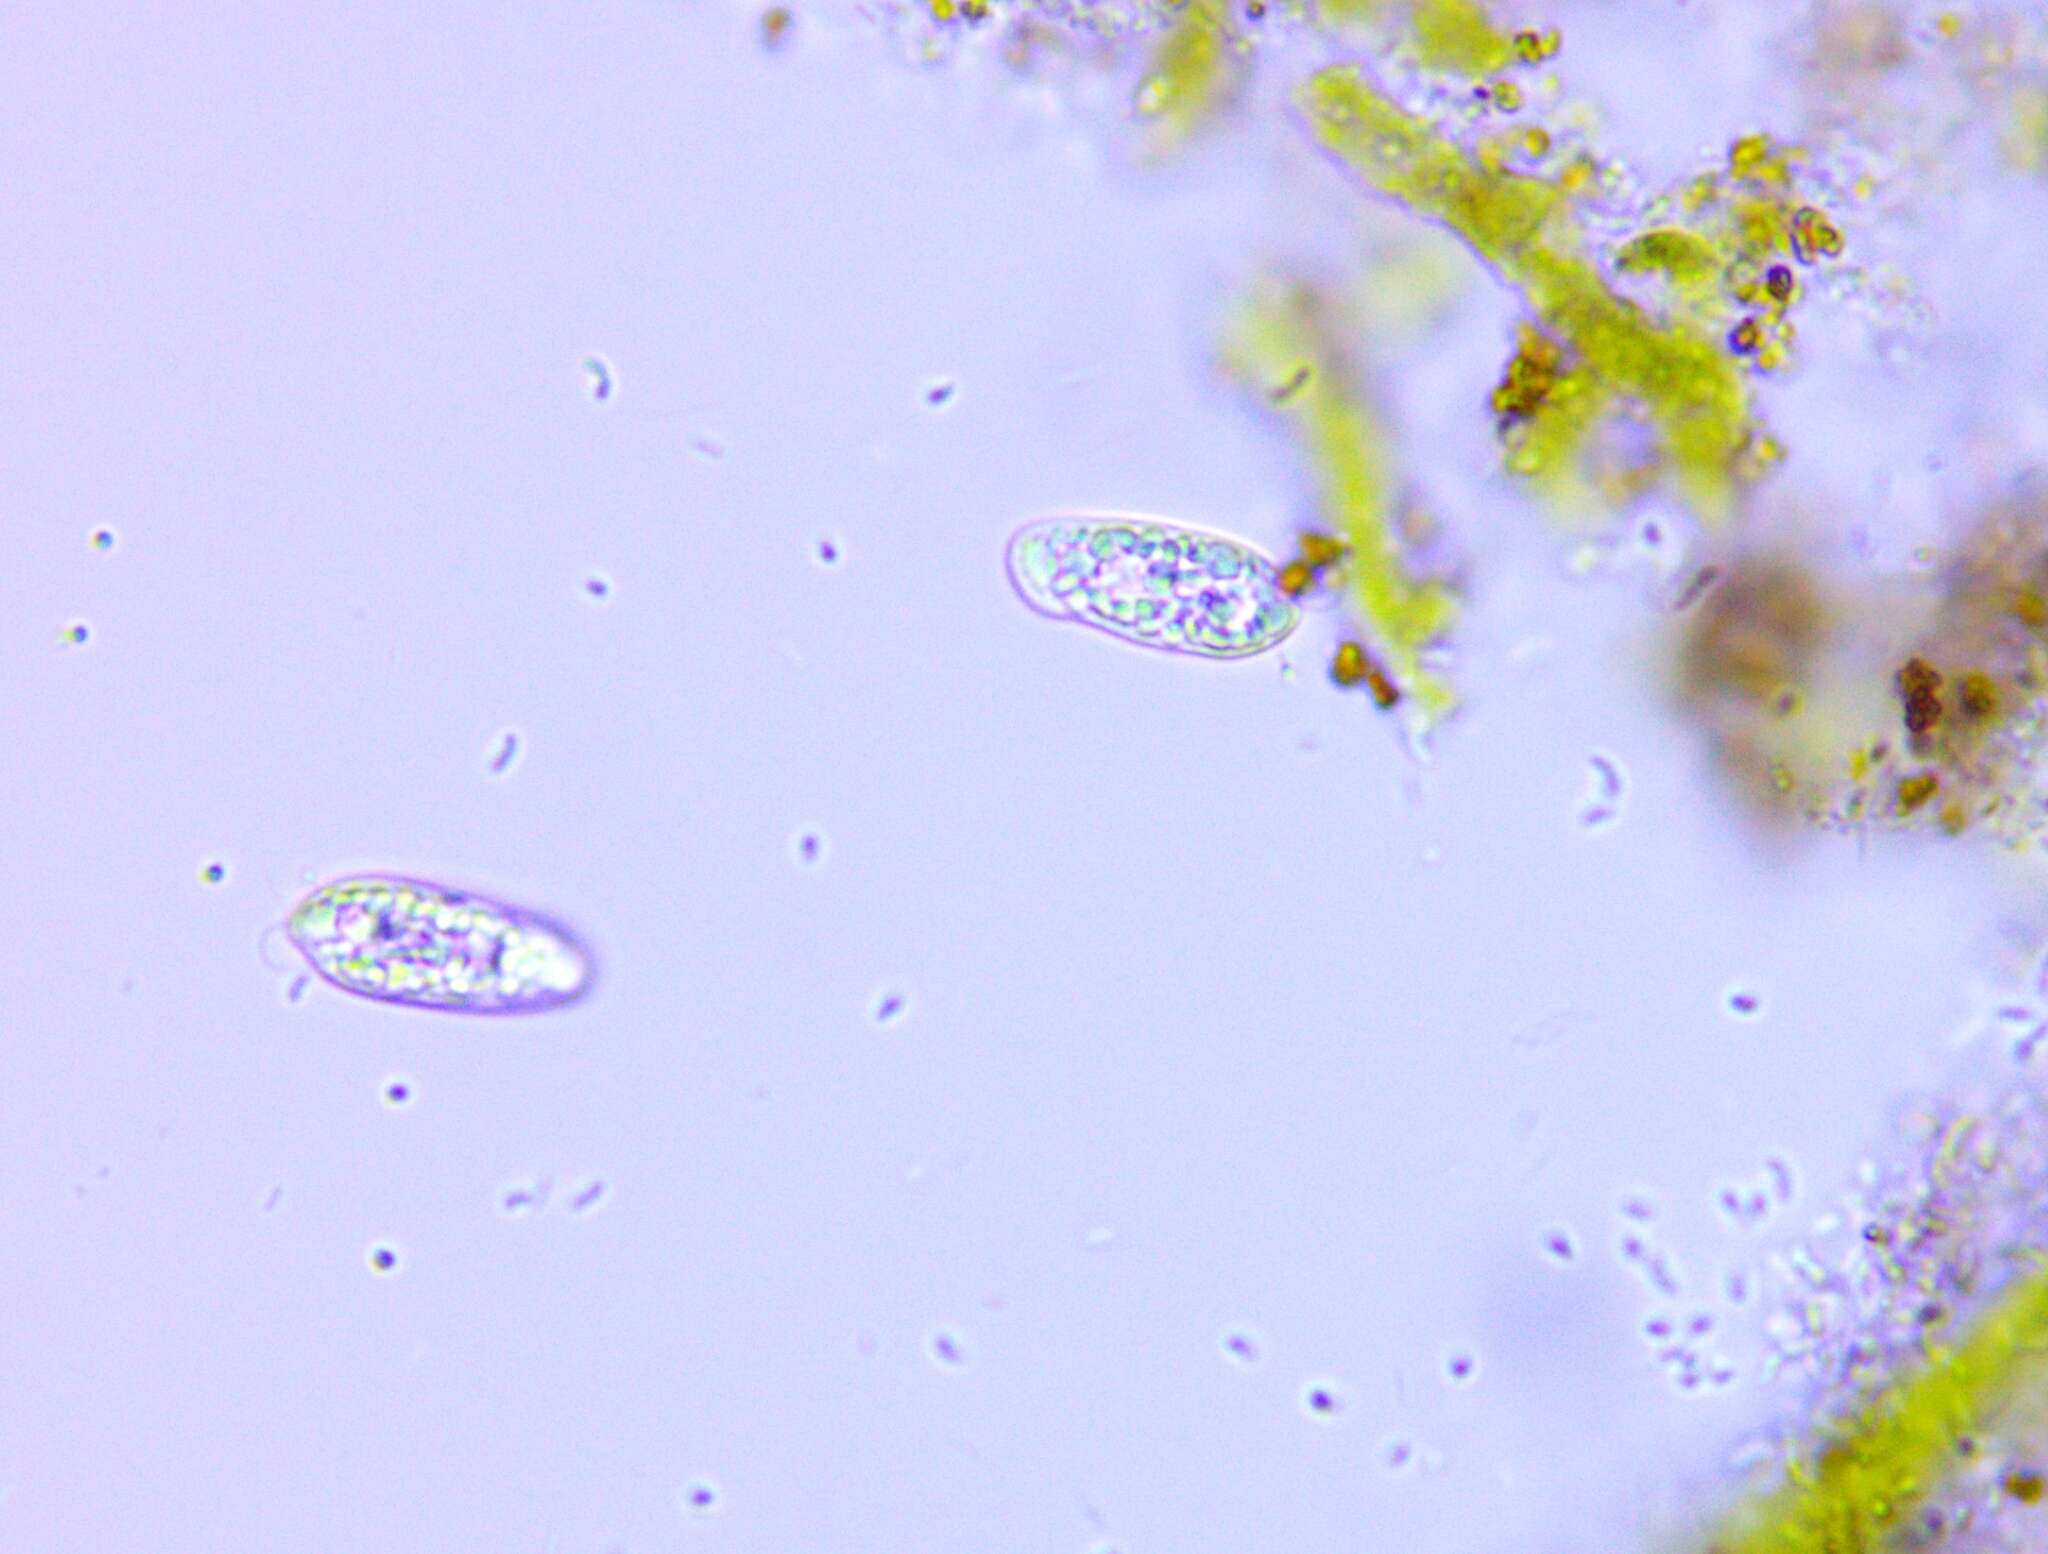 Cryptomonas paramecium的圖片